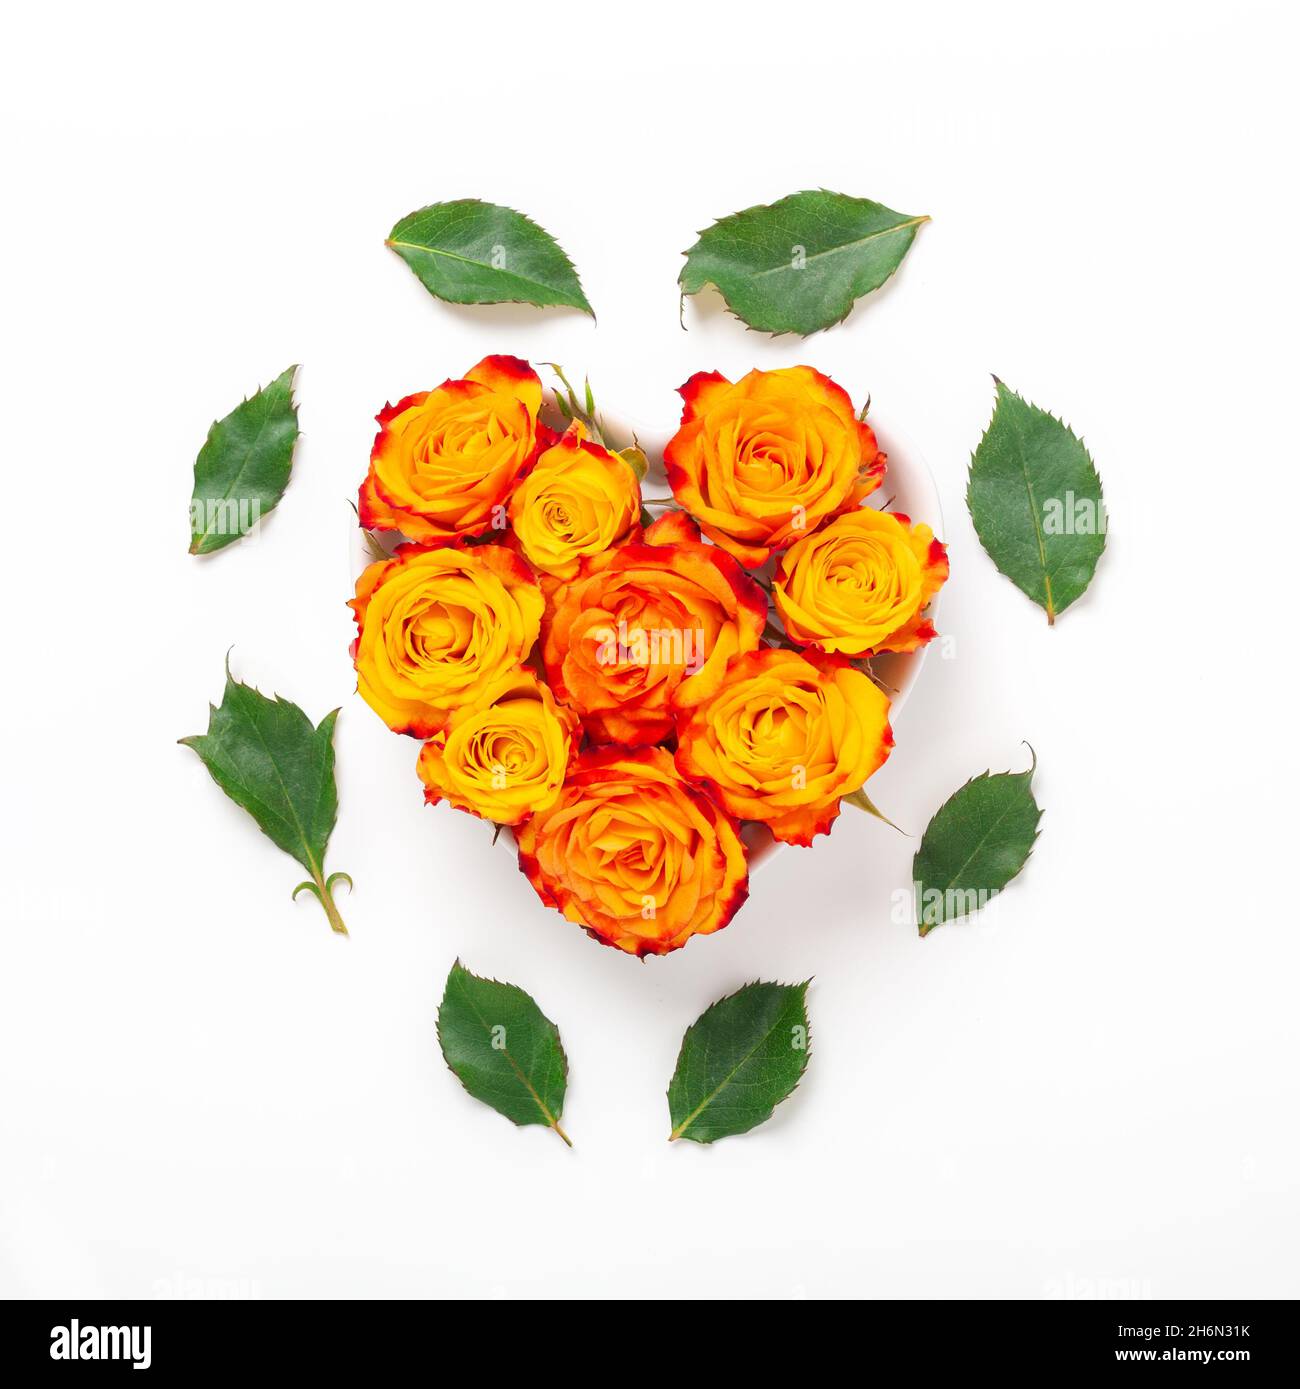 Composition des fleurs. Fleurs roses orange dans un bol en forme de coeur sur fond blanc. Concept de la Saint-Valentin. Flat lay, vue de dessus, espace de copie - image Banque D'Images